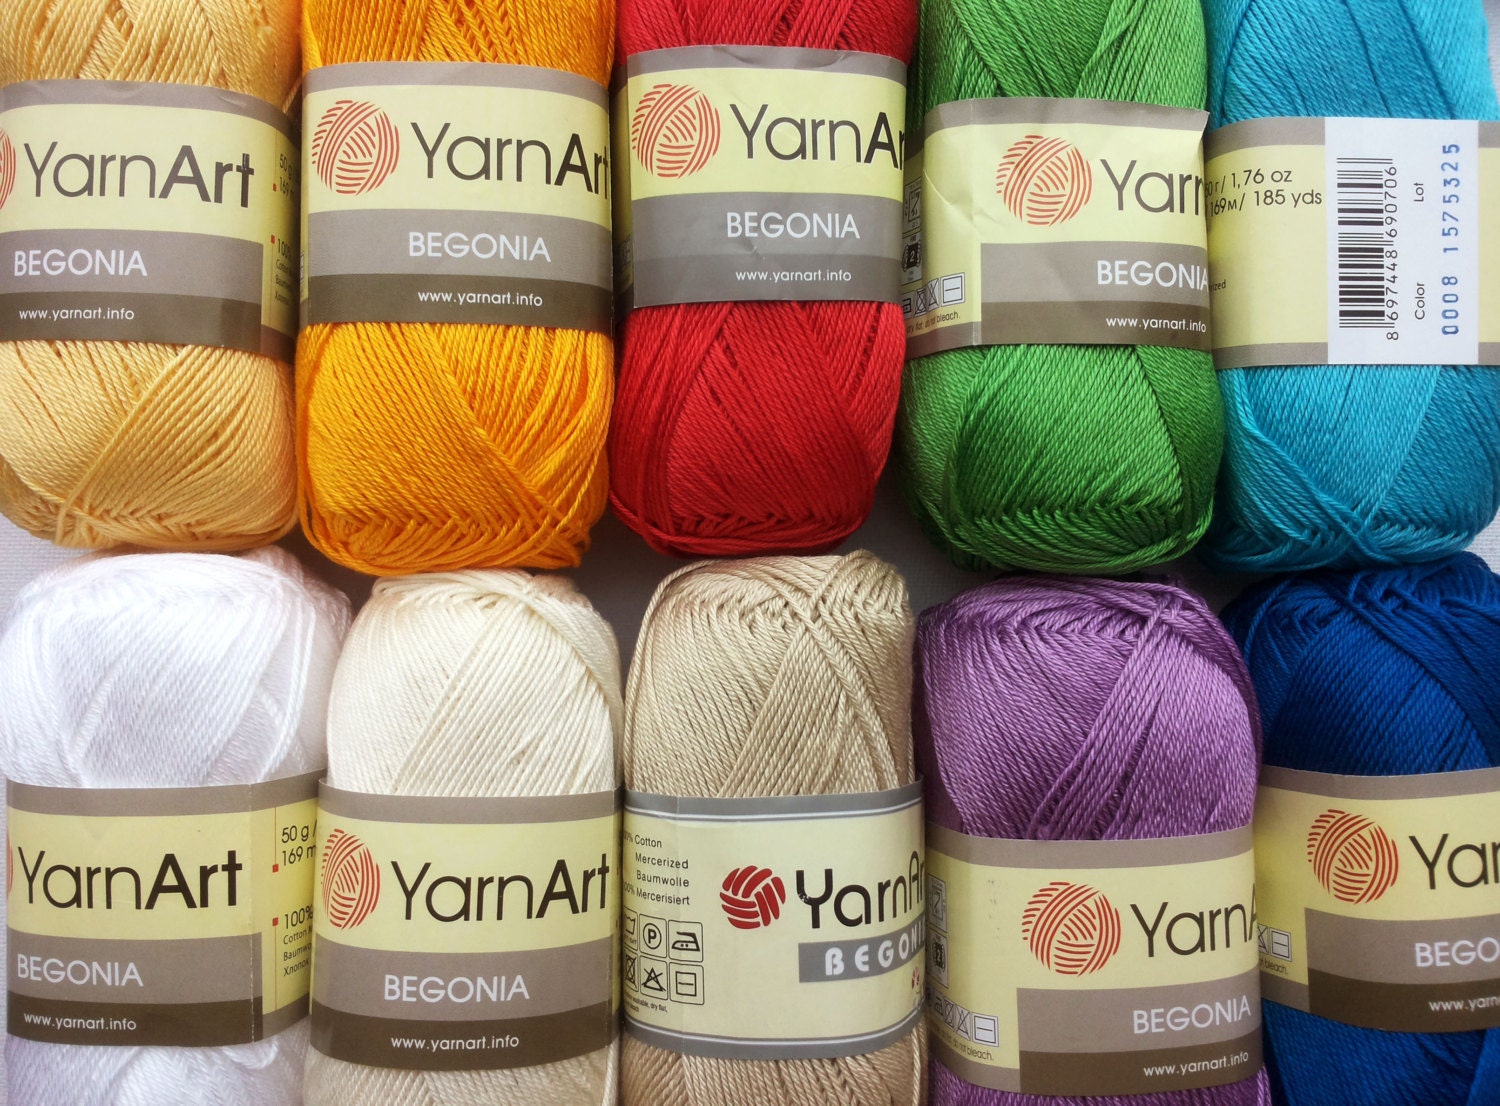 GetUSCart- (1 Skein) 24/7 Cotton® Yarn, Goldenrod